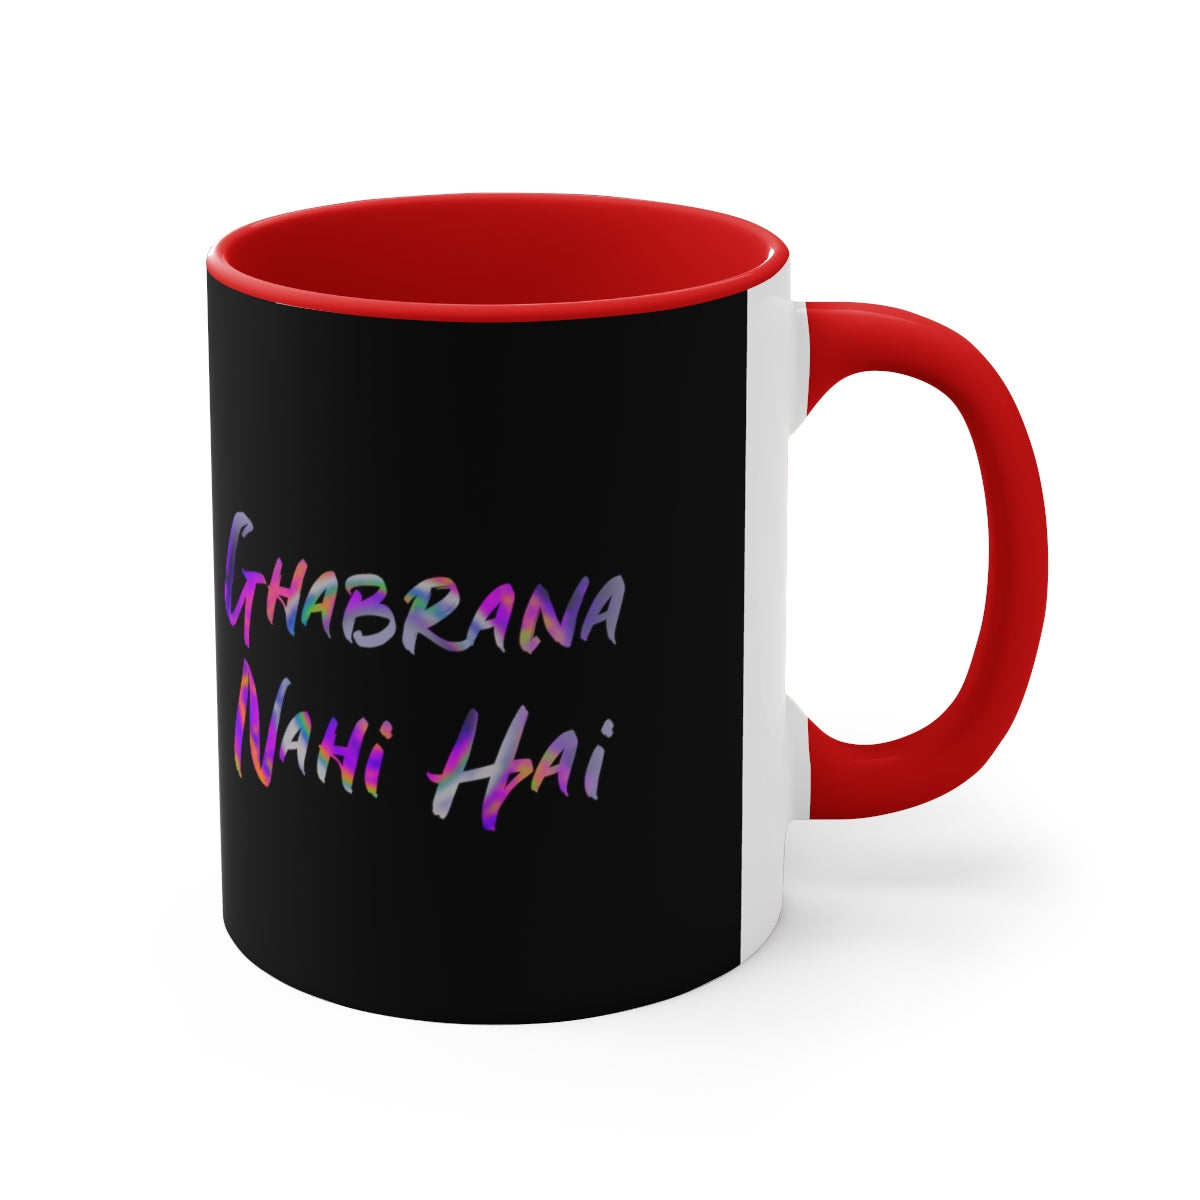 Ghabrana nahi hai Coffee Mug